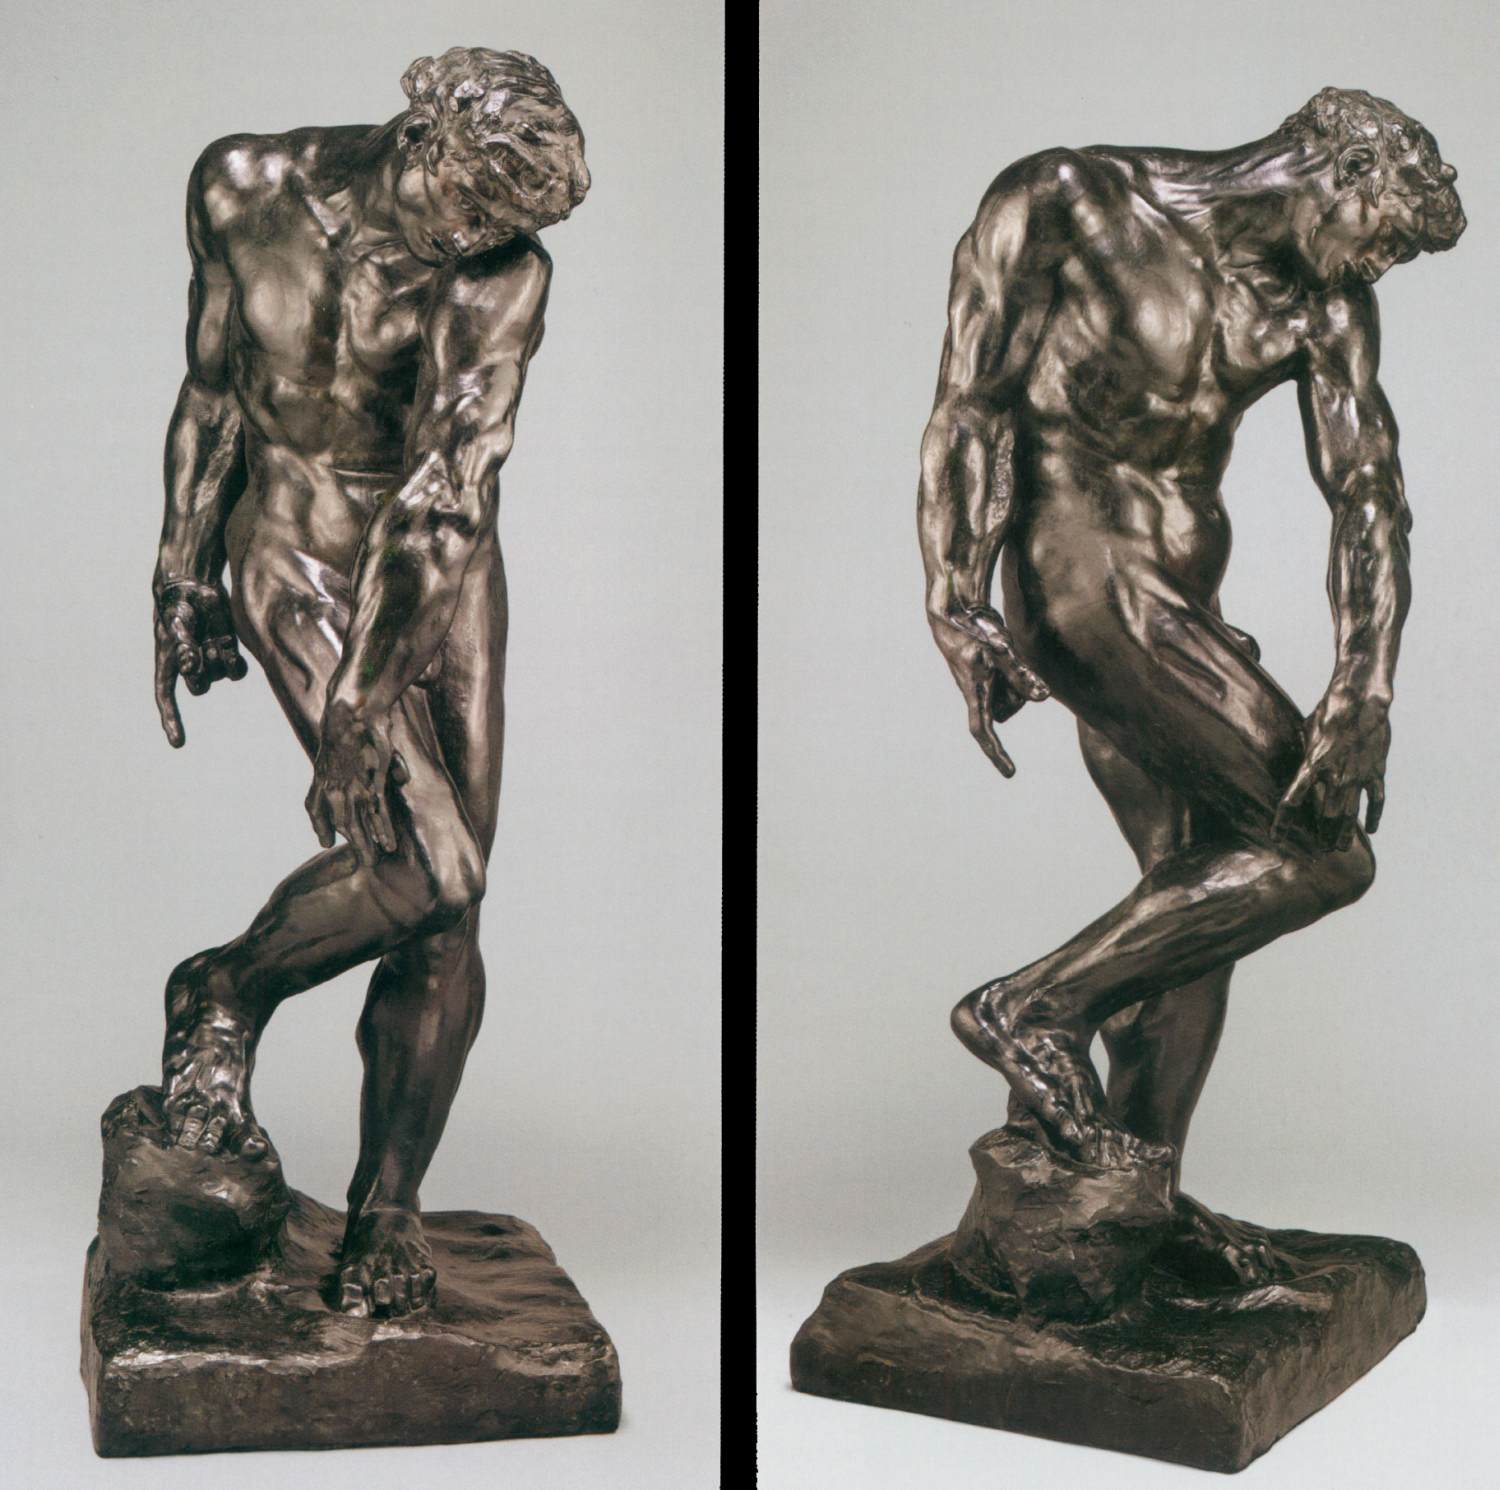 Auguste+Rodin-1840-1917 (229).jpg